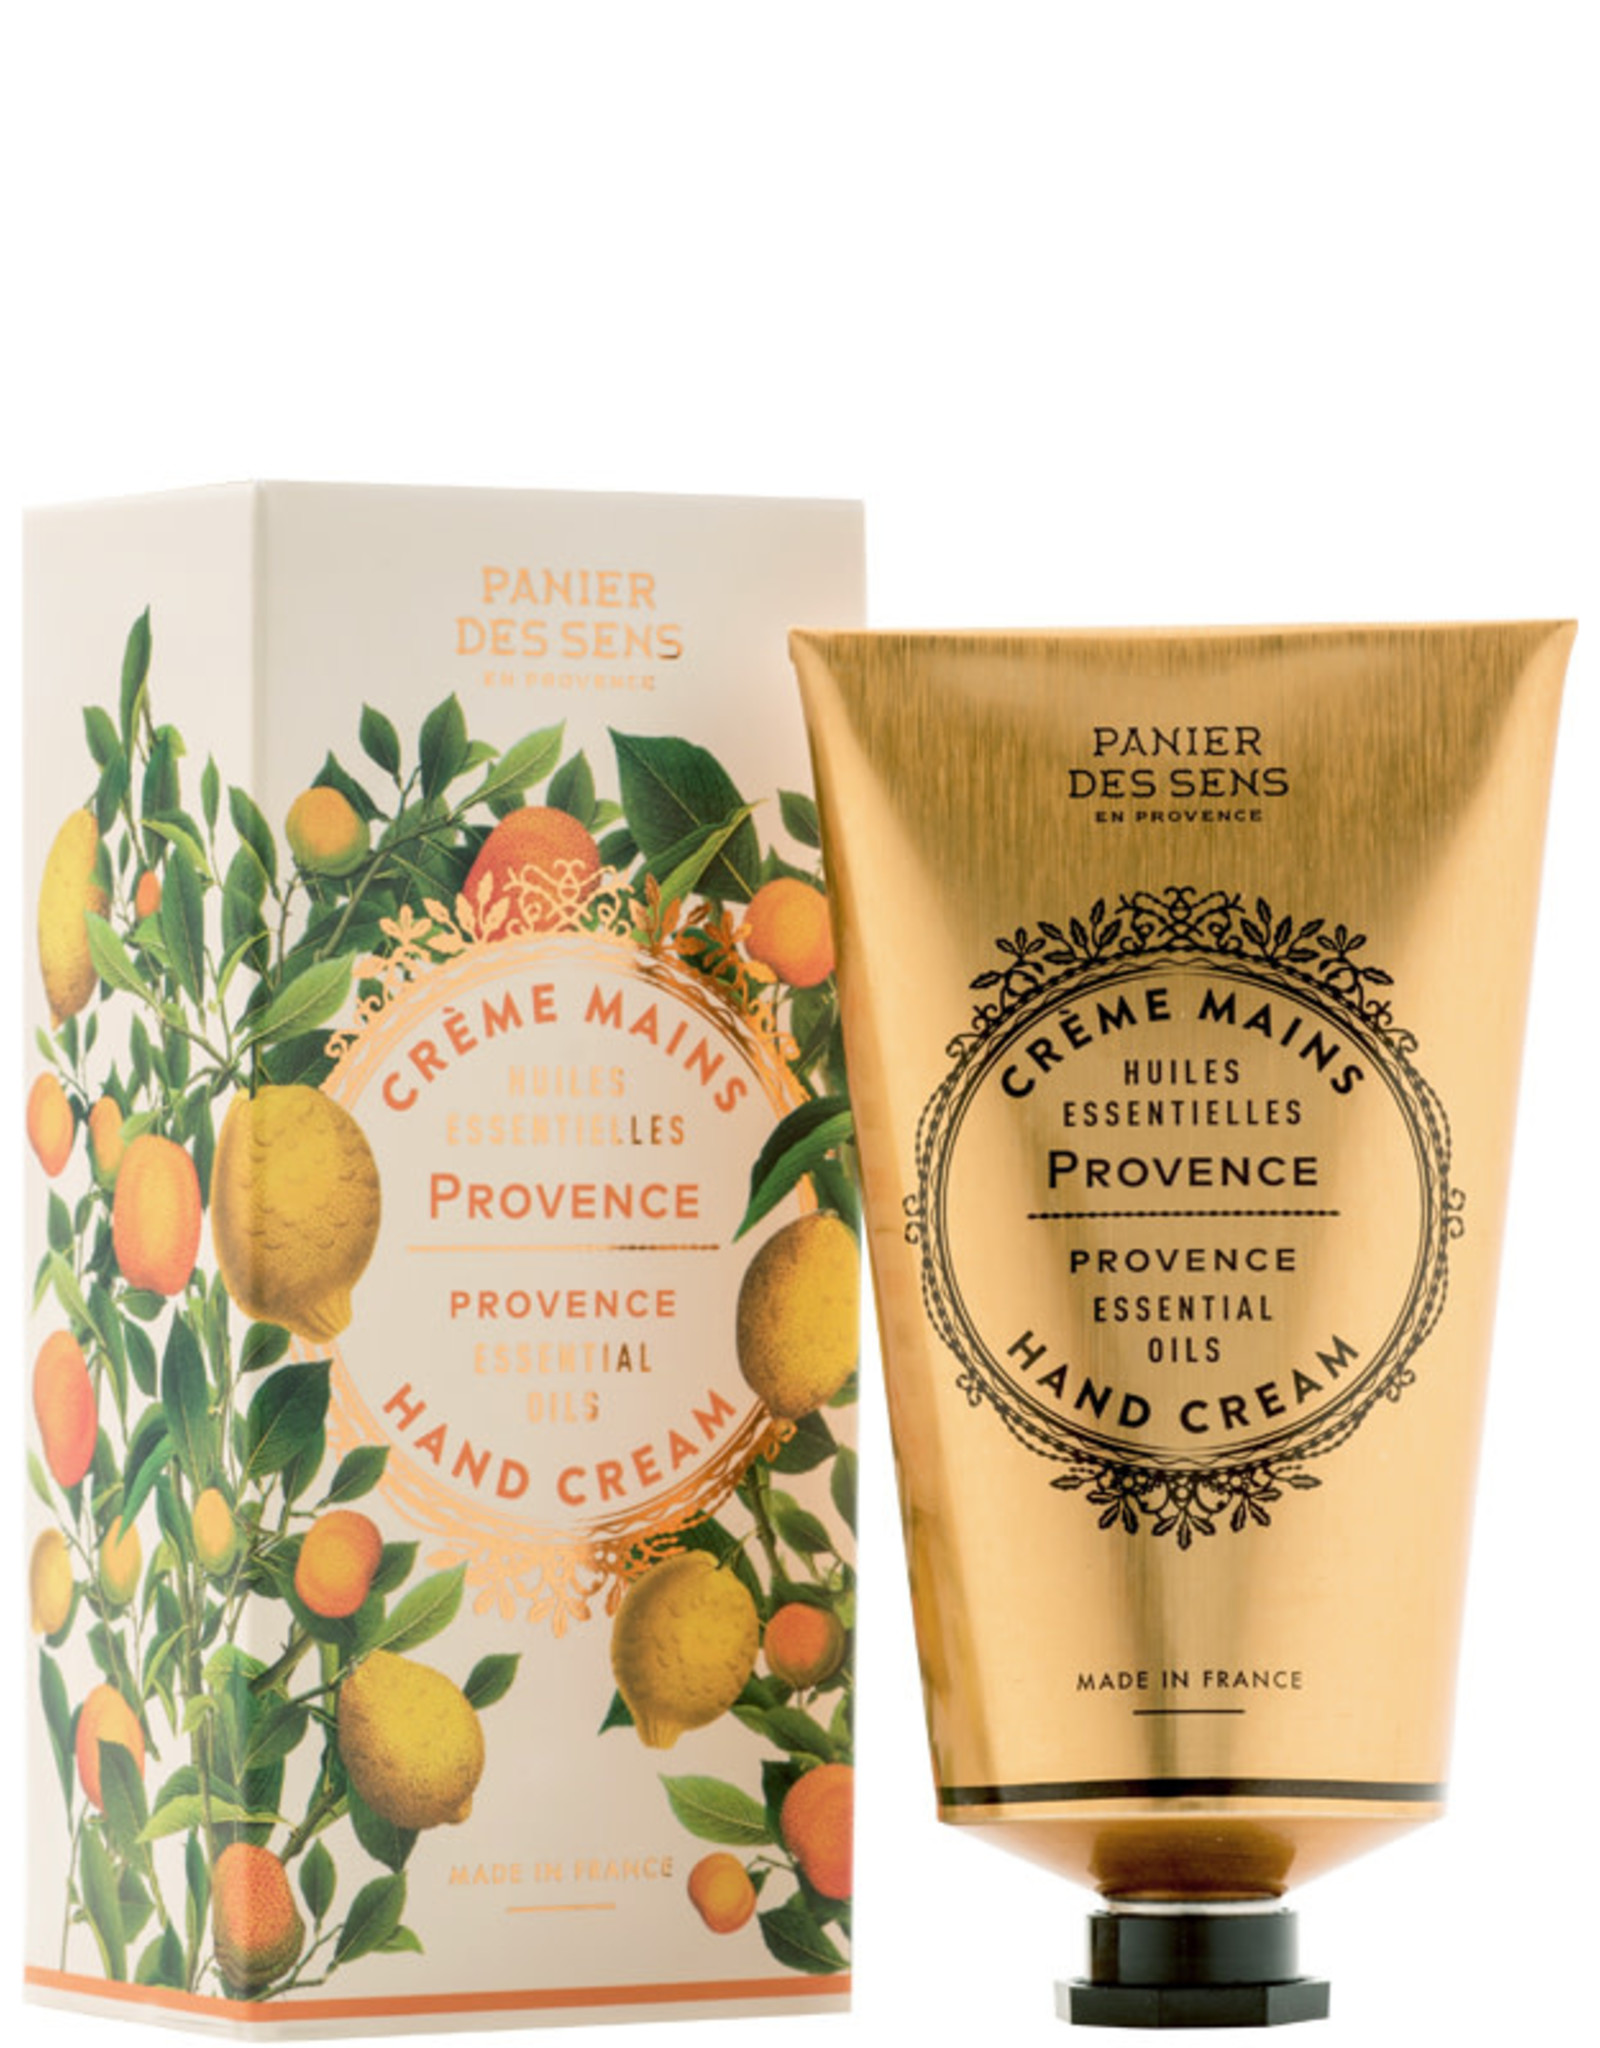 Panier Des Sens "Essential Oils From Provence" Hand Cream - 2.6 oz.  Panier Des Sens